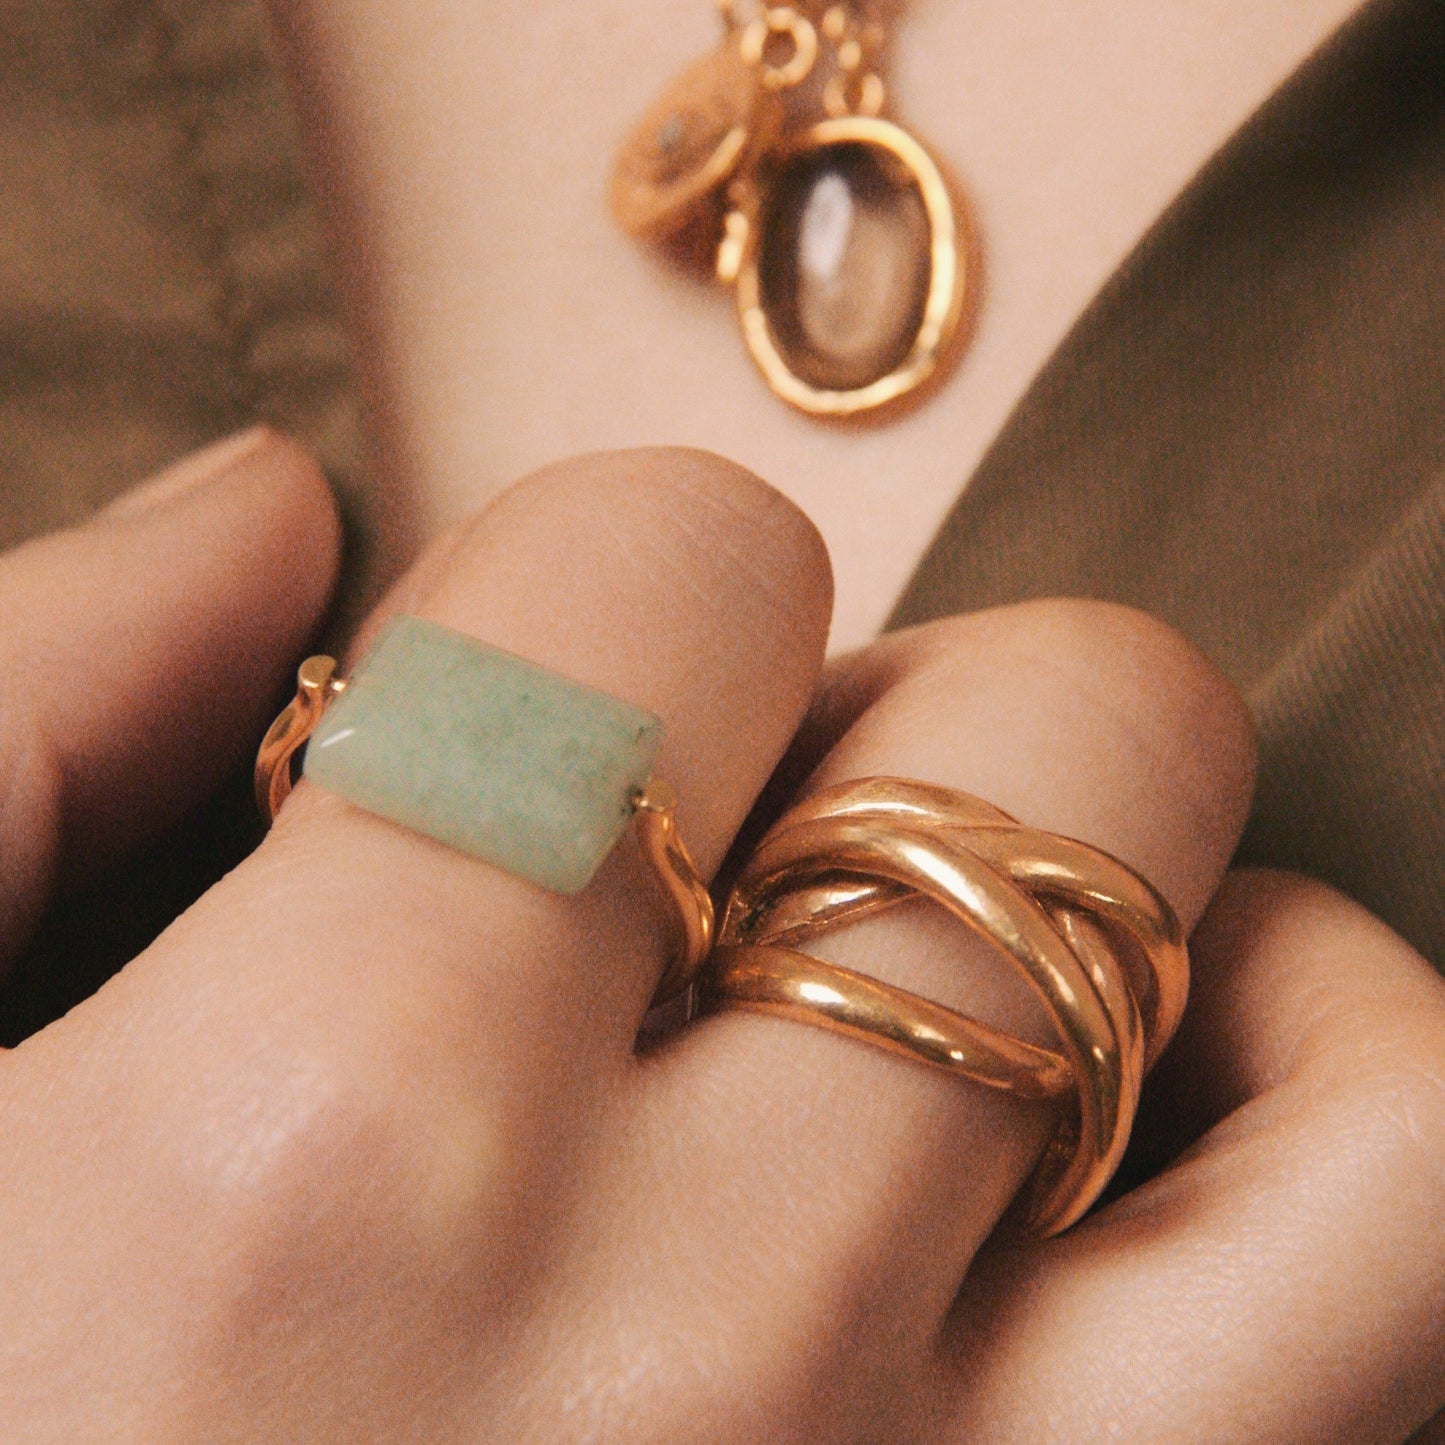 Semi-precious stone rings